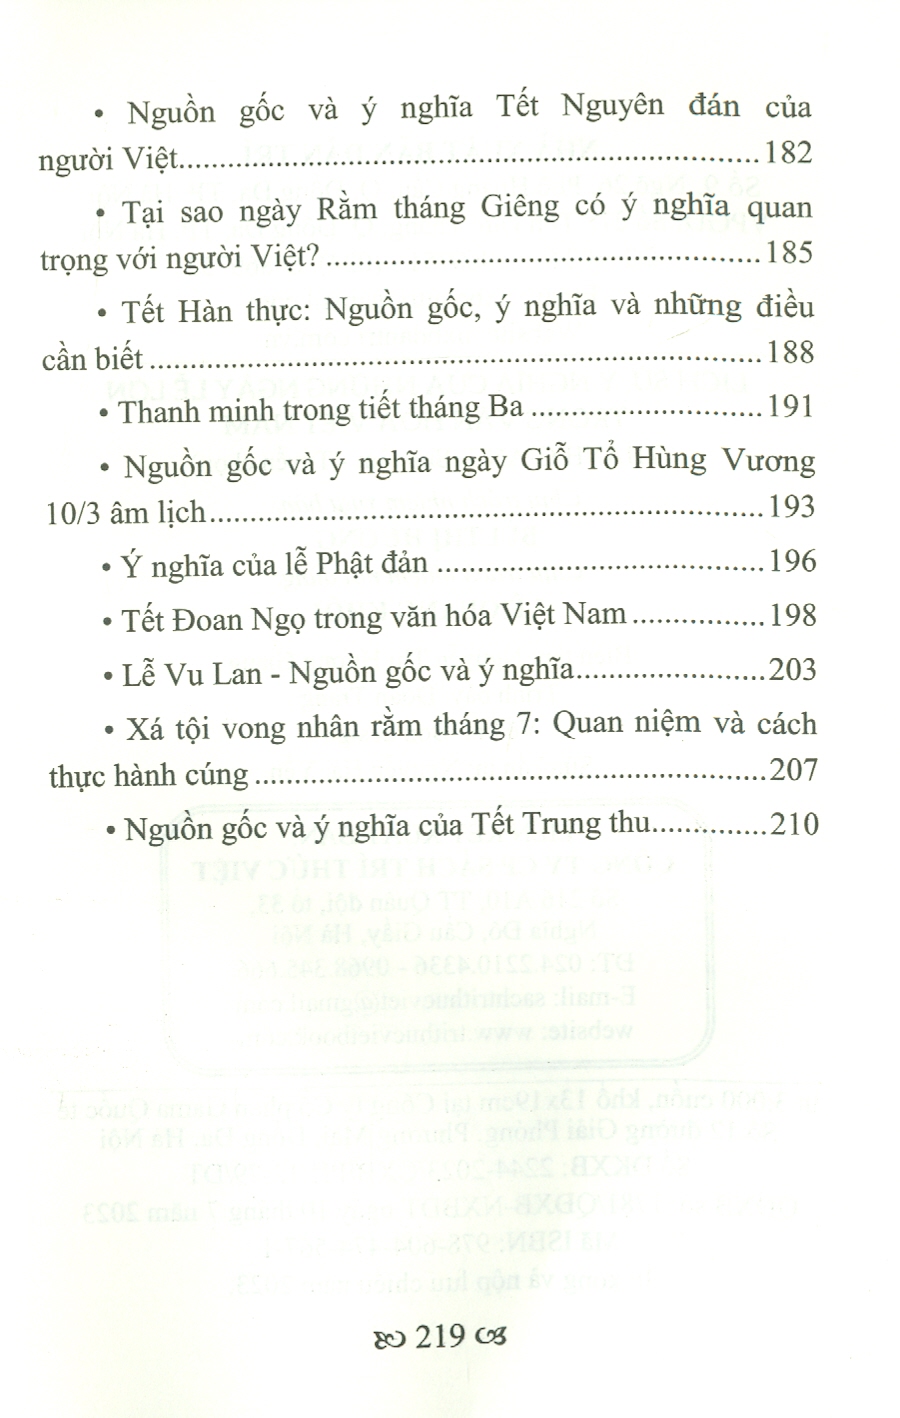 Lịch Sử, Ý Nghĩa Của Những Ngày Lễ Lớn Trong Văn Hoá Việt Nam